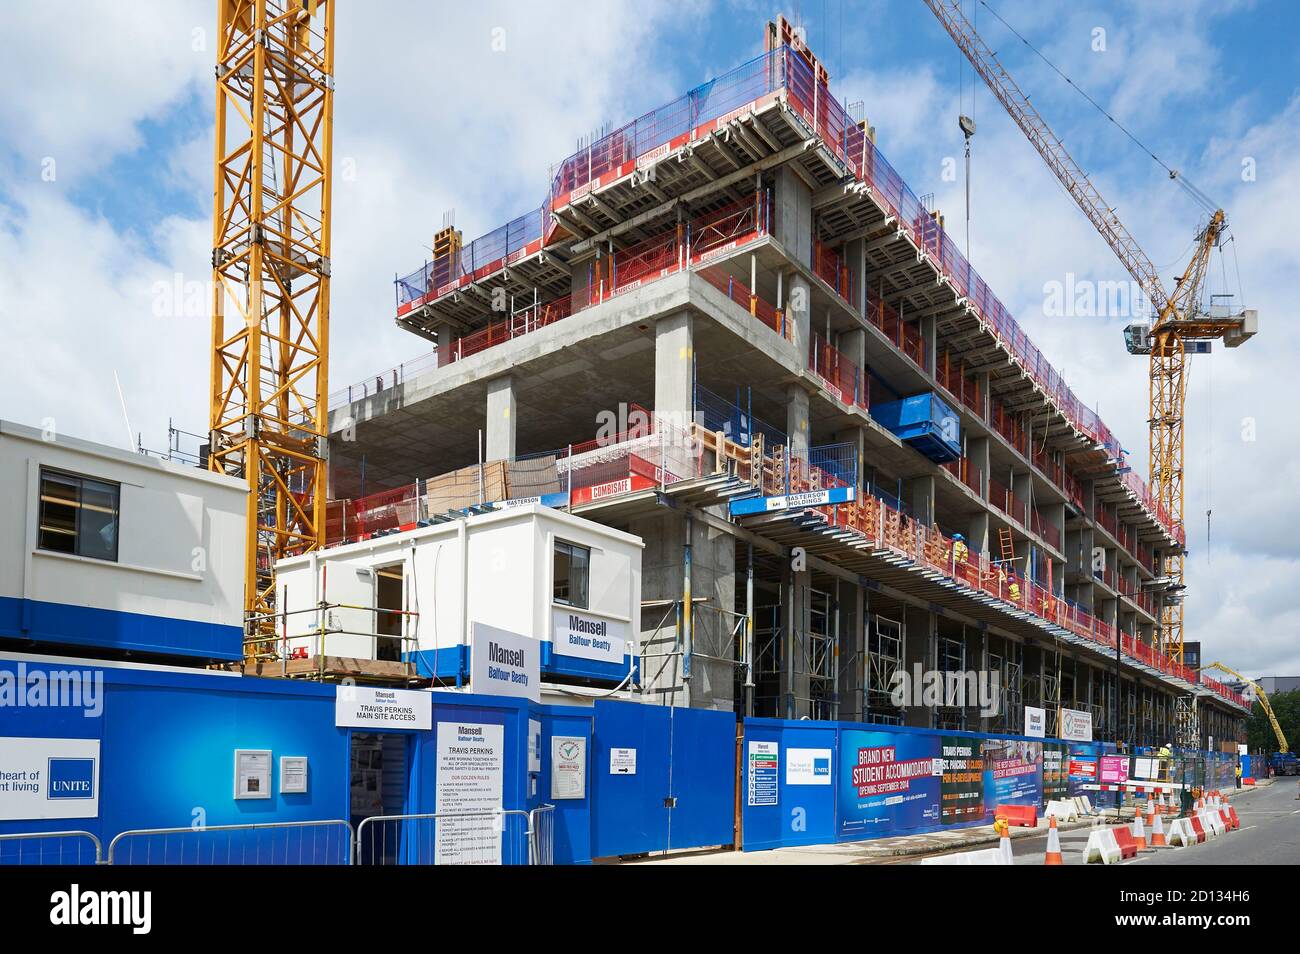 UK Bauindustrie bei der Arbeit - Gebäude Wohnungen, Nord-London Großbritannien Stockfoto